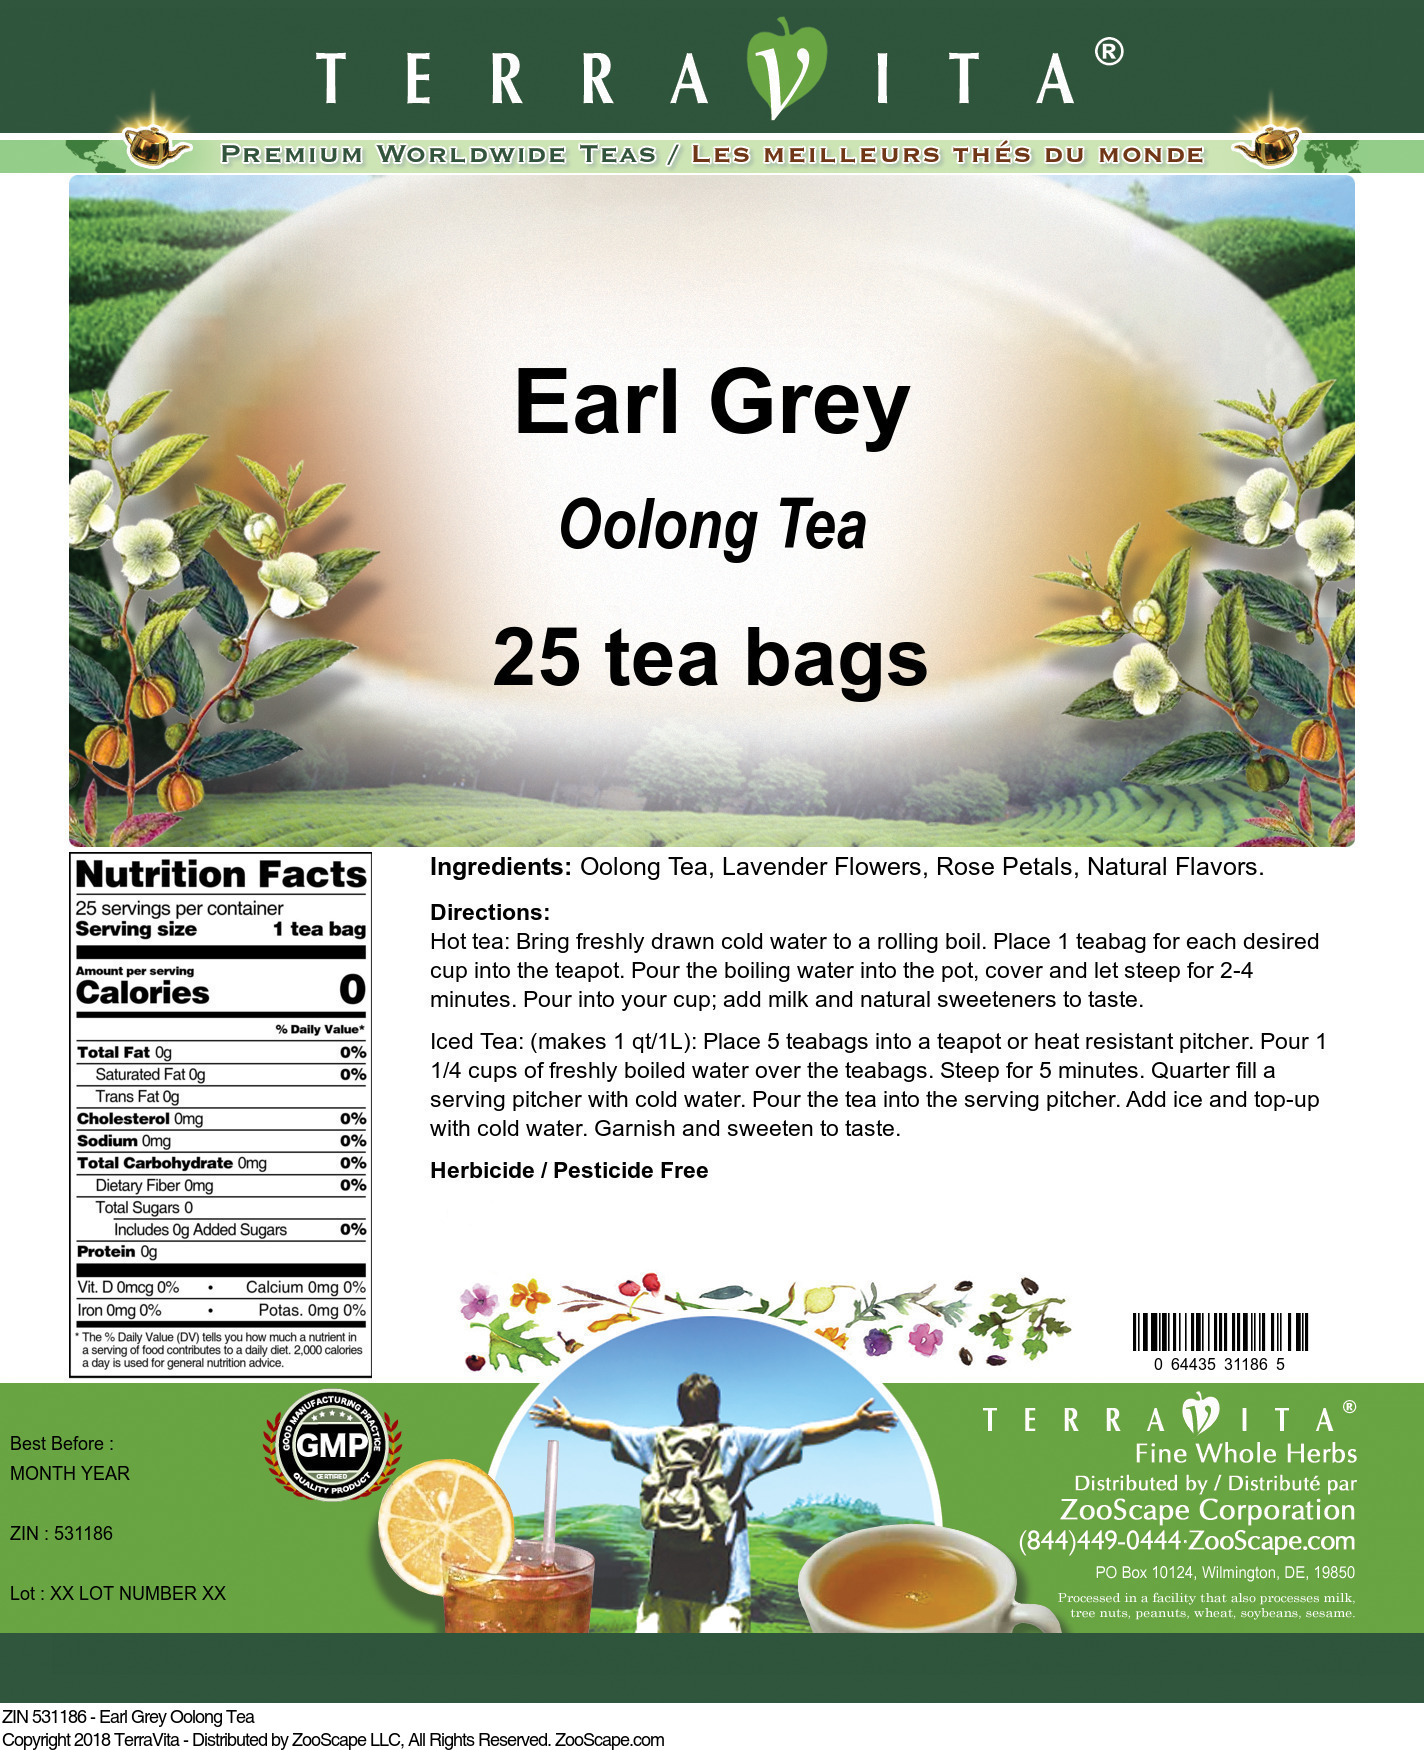 Earl Grey Oolong Tea - Label